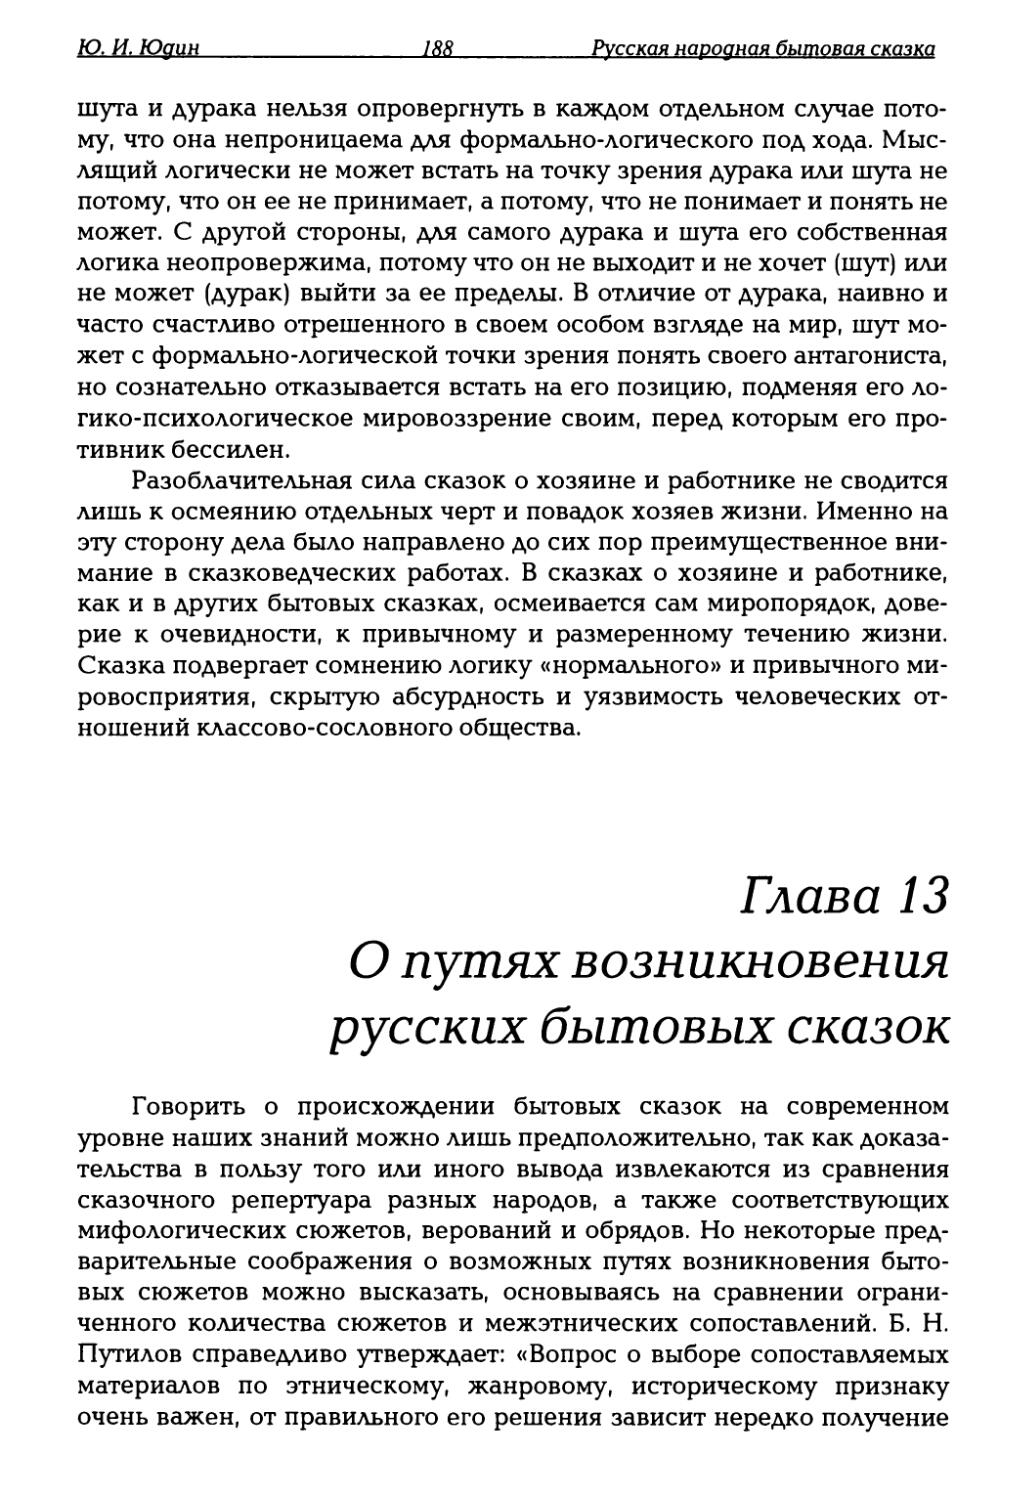 Глава 13. О путях возникновения русских бытовых сказок